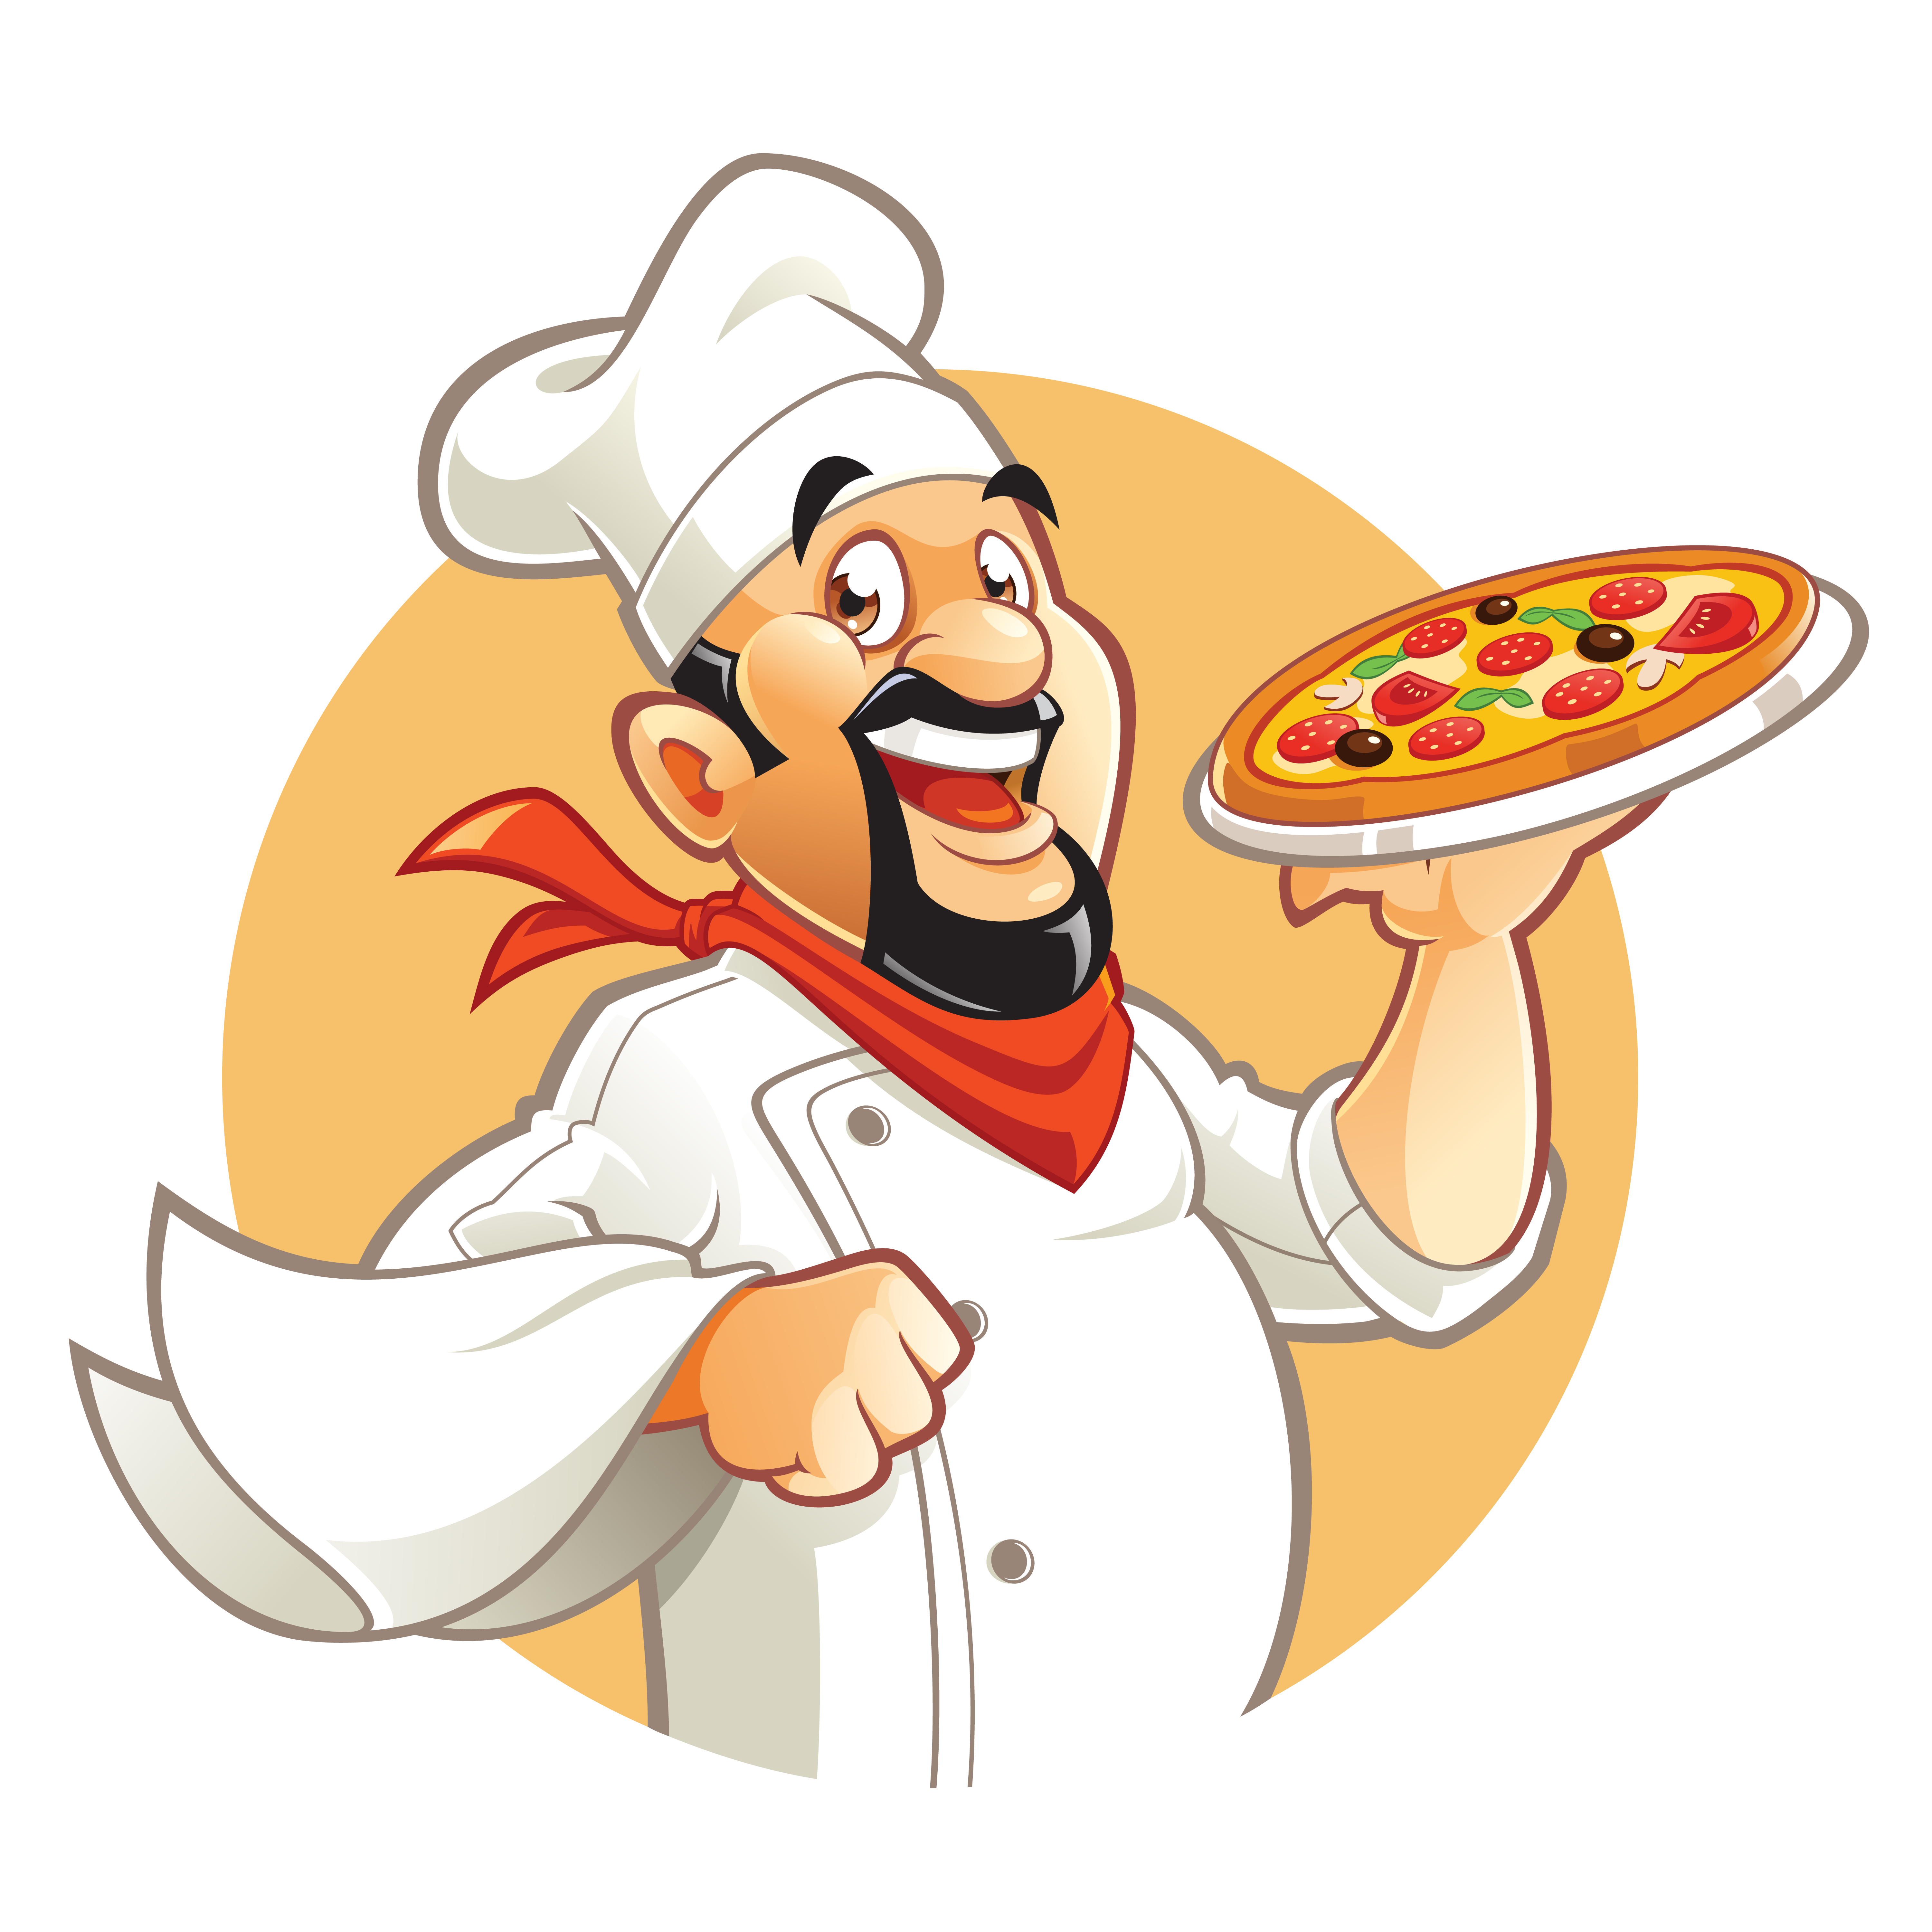 Cartoon pizza chef 638290 Download Free Vectors Clipart Graphics & Vector Art